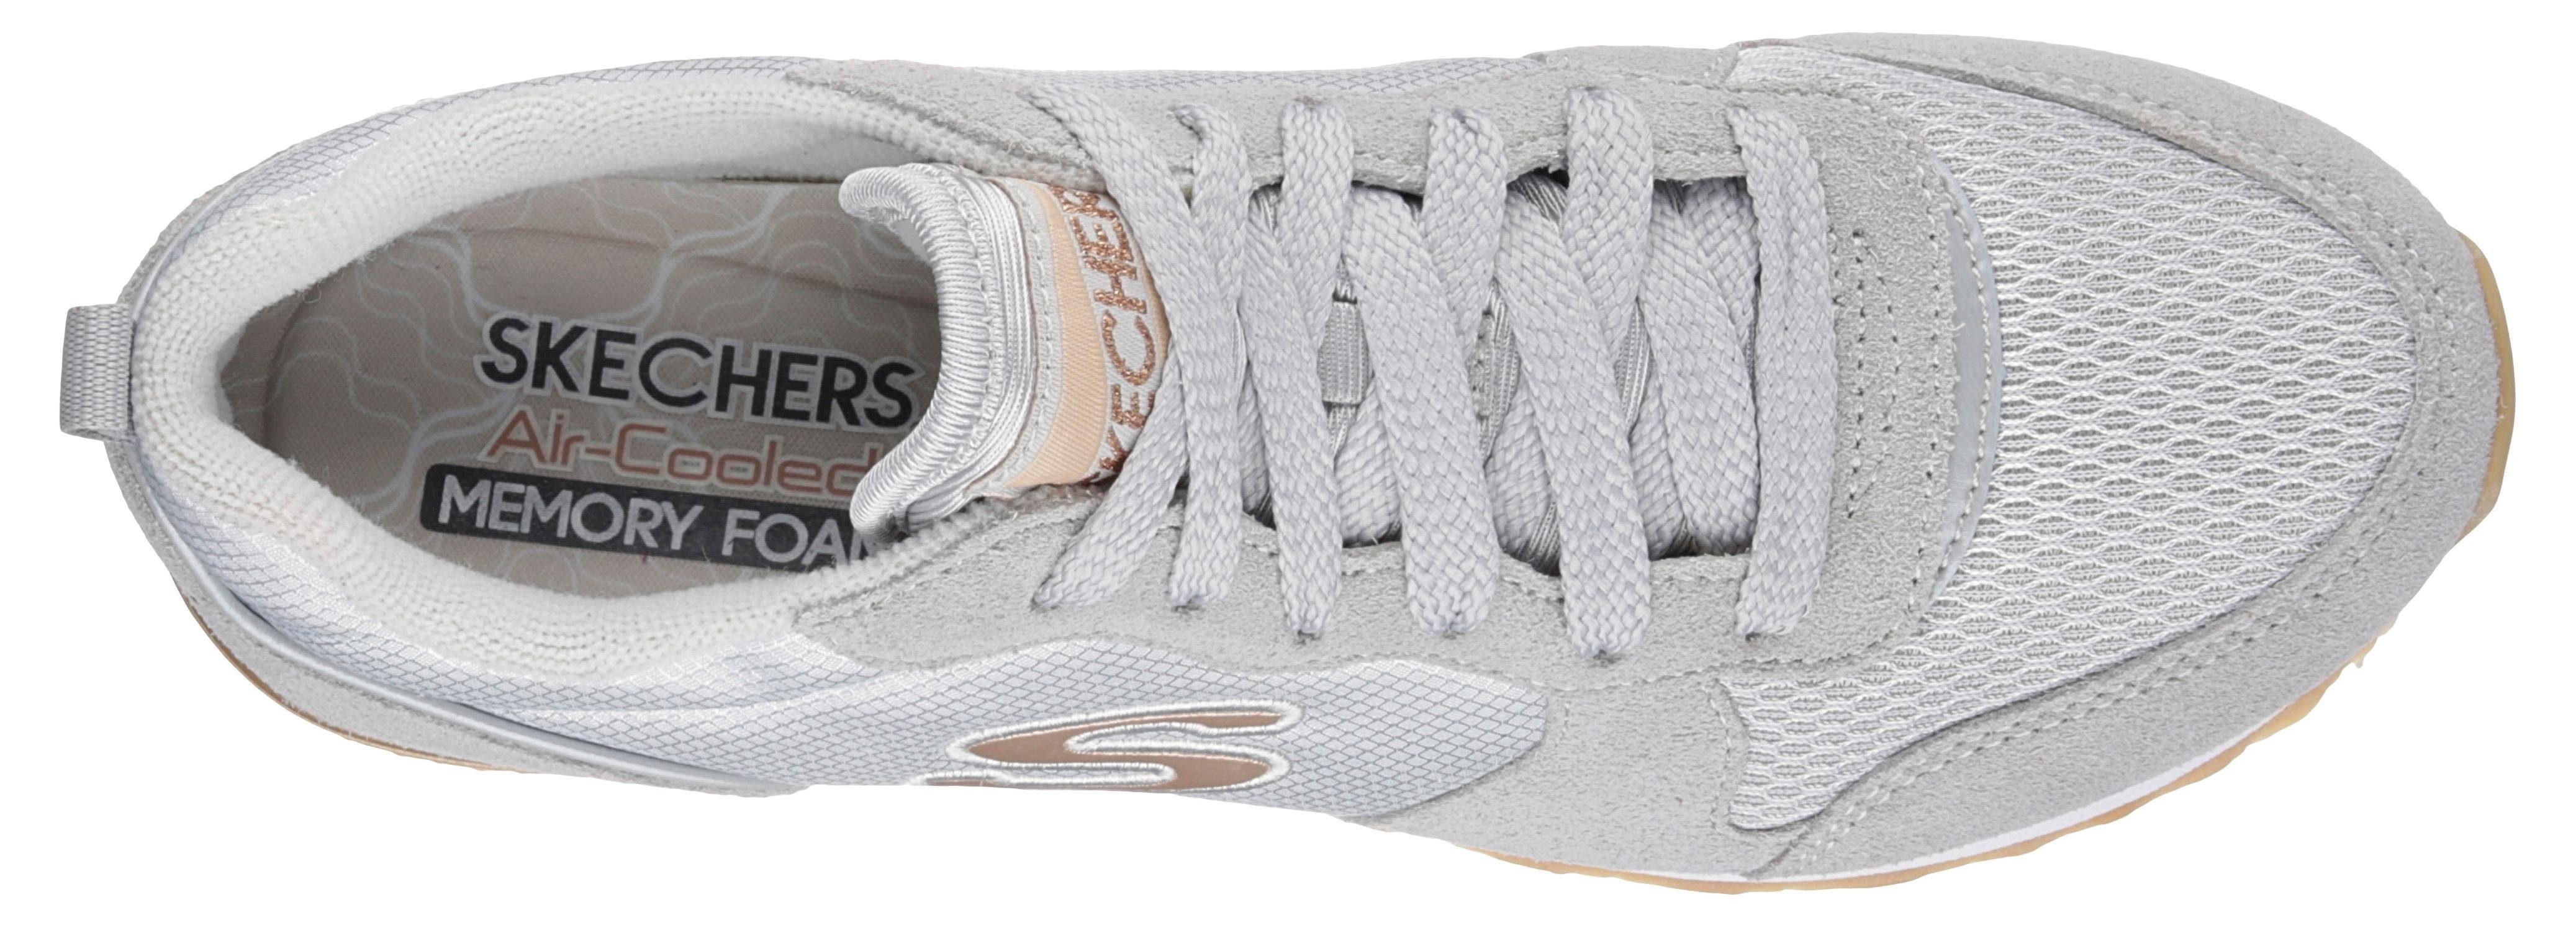 GURL mit komfortabler OG - Skechers Sneaker GOLDN 85 hellgrau Memory Foam Air-Cooled Ausstattung